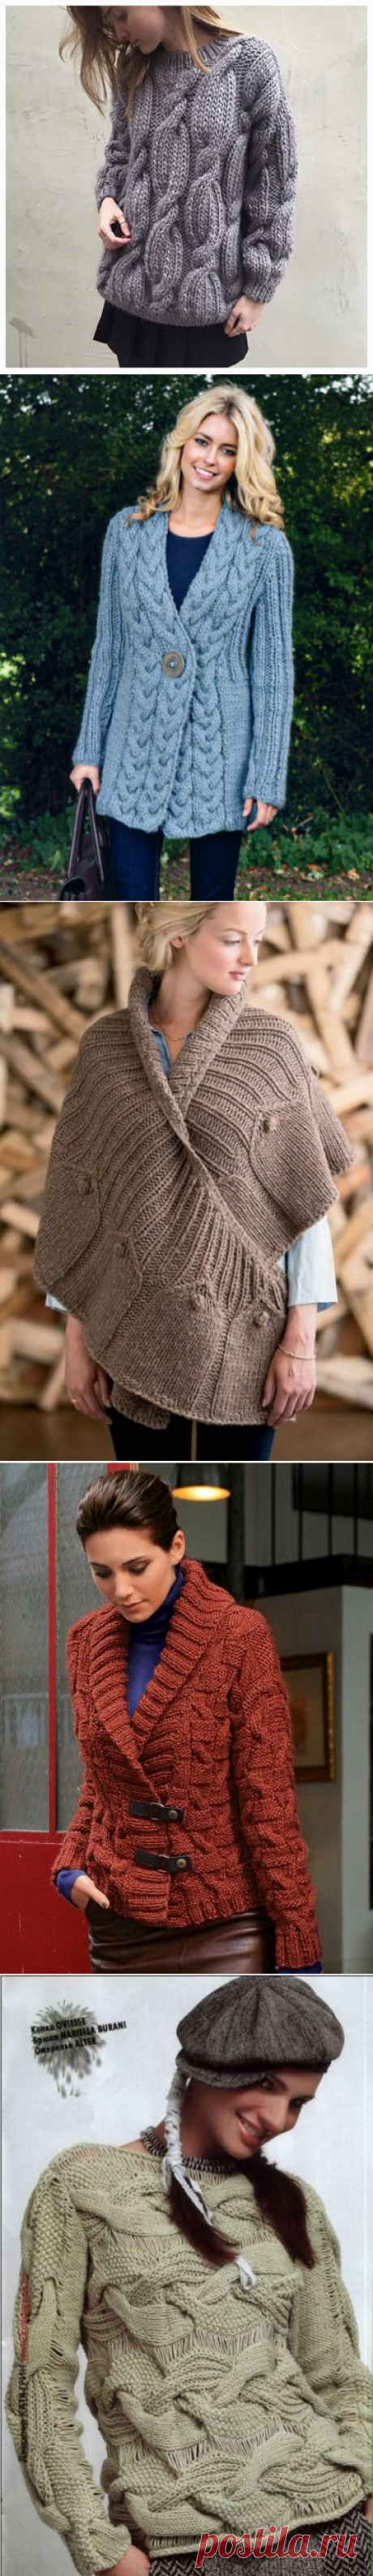 Sidney Artesanato: Moda Inverno....Blusas de tricot.Идеи.